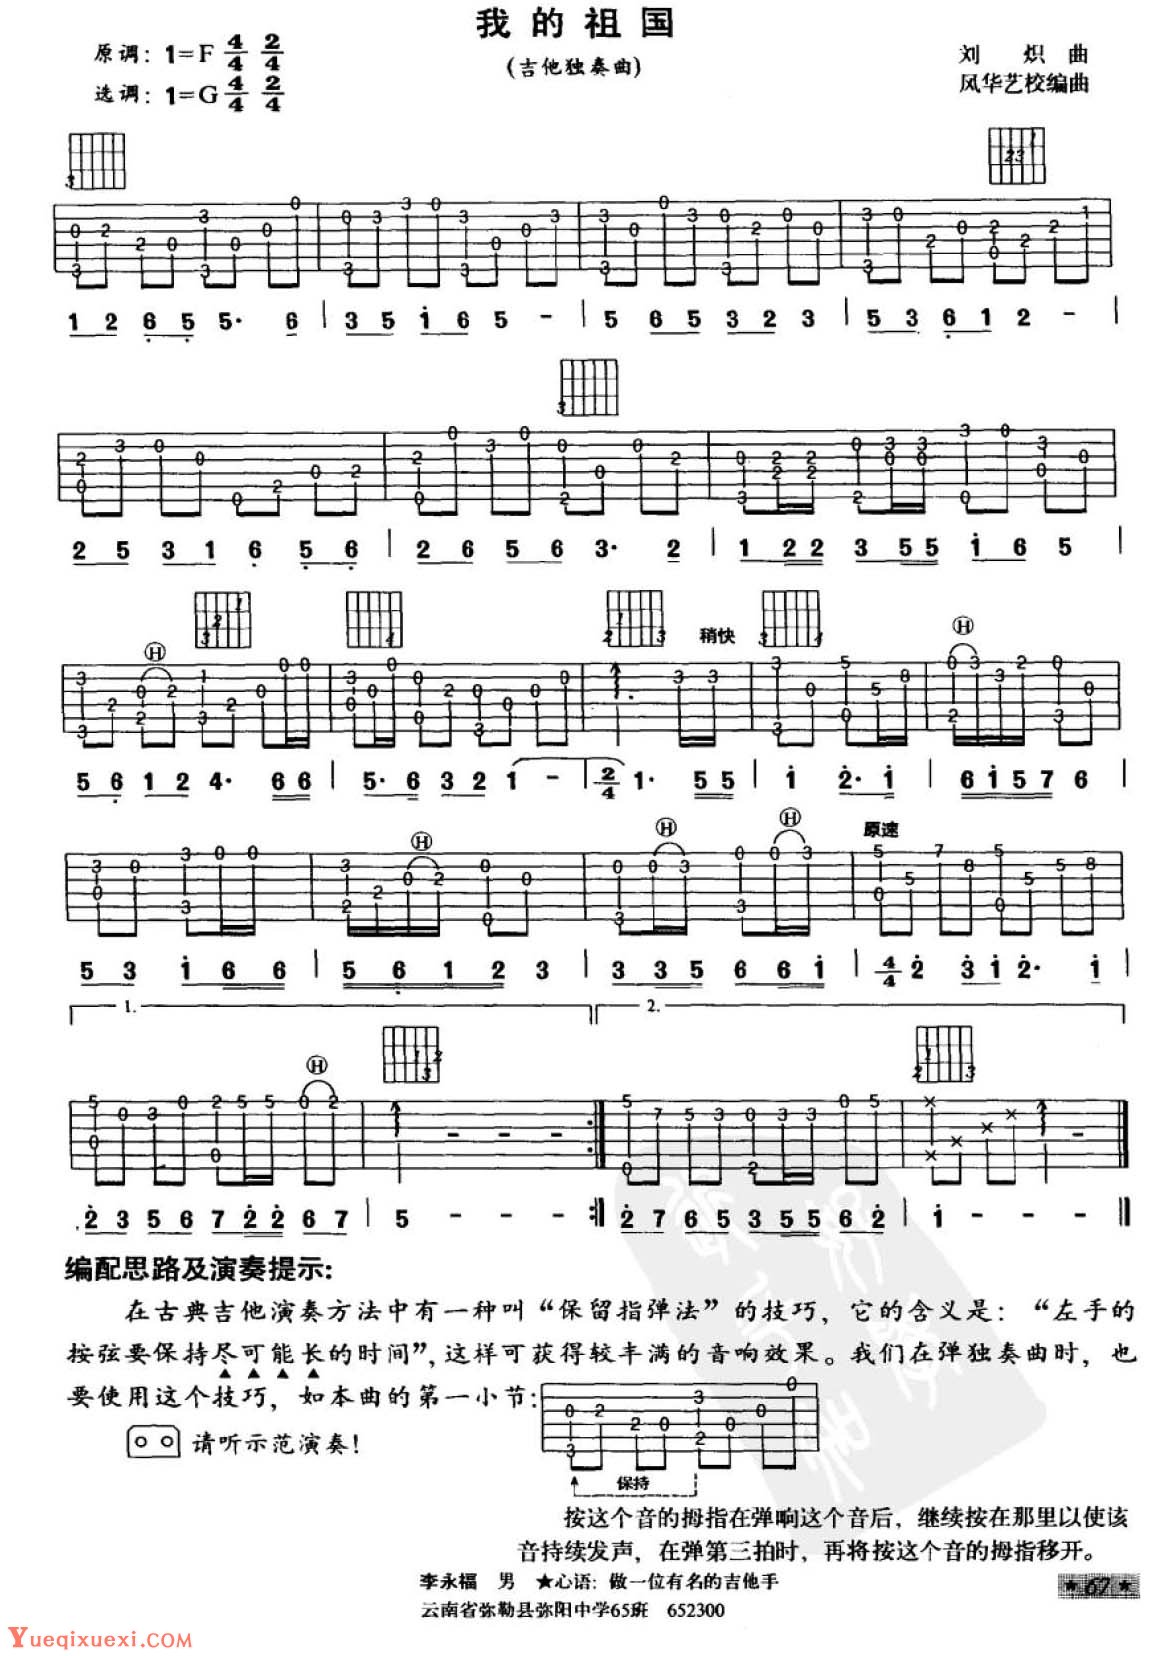 吉他中级练习曲《我的祖国》中国乐曲